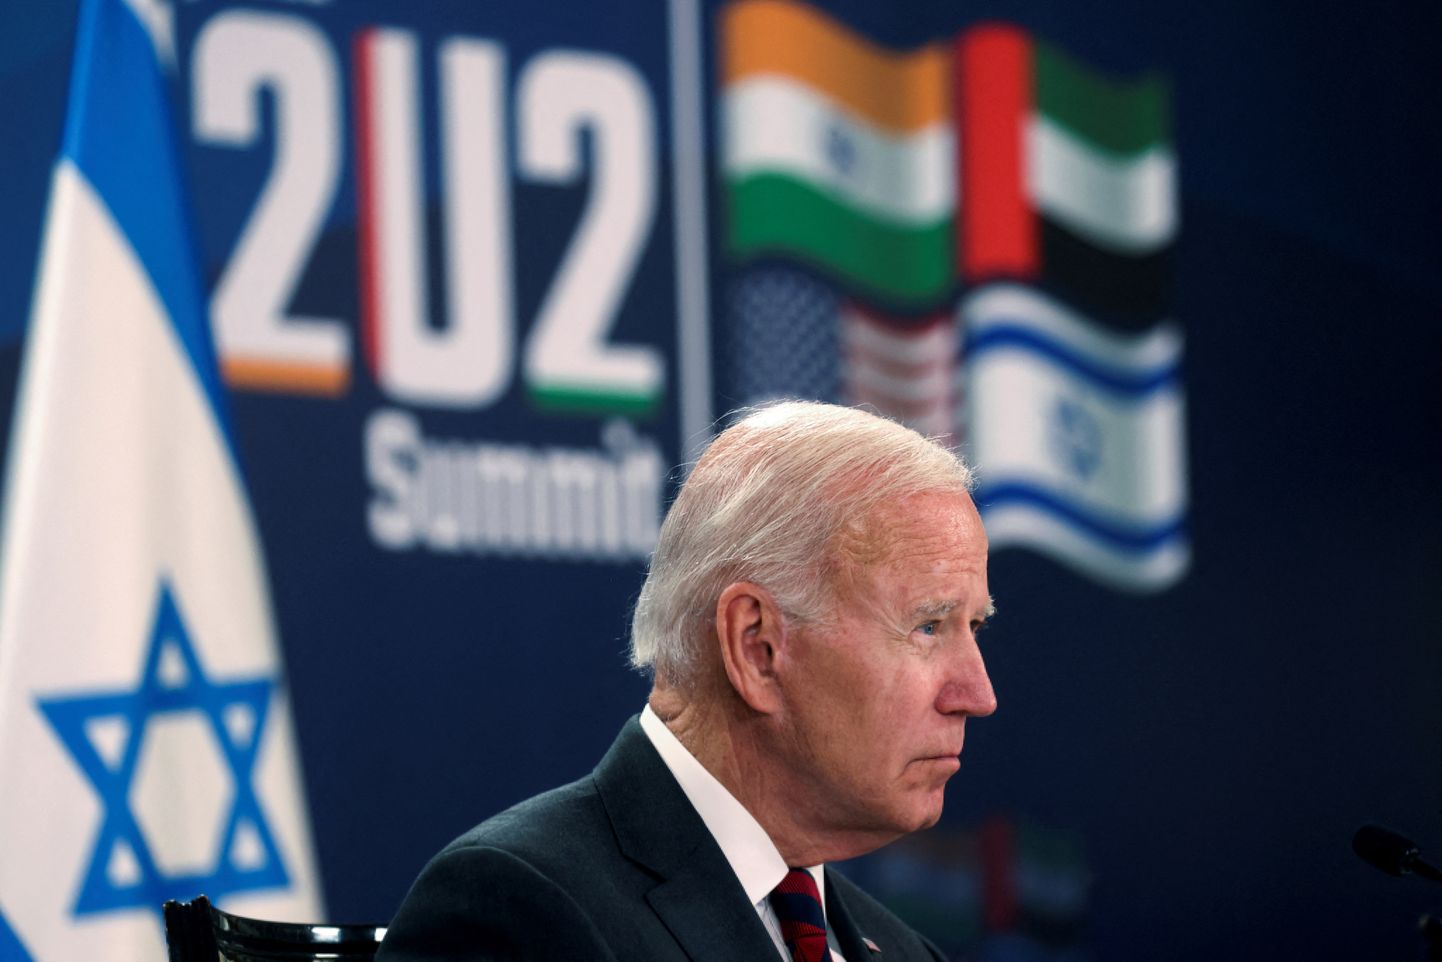 USA president Joe Biden Jeruusalemmas I2U2 rühma esimesel virtuaalkohtumisel.